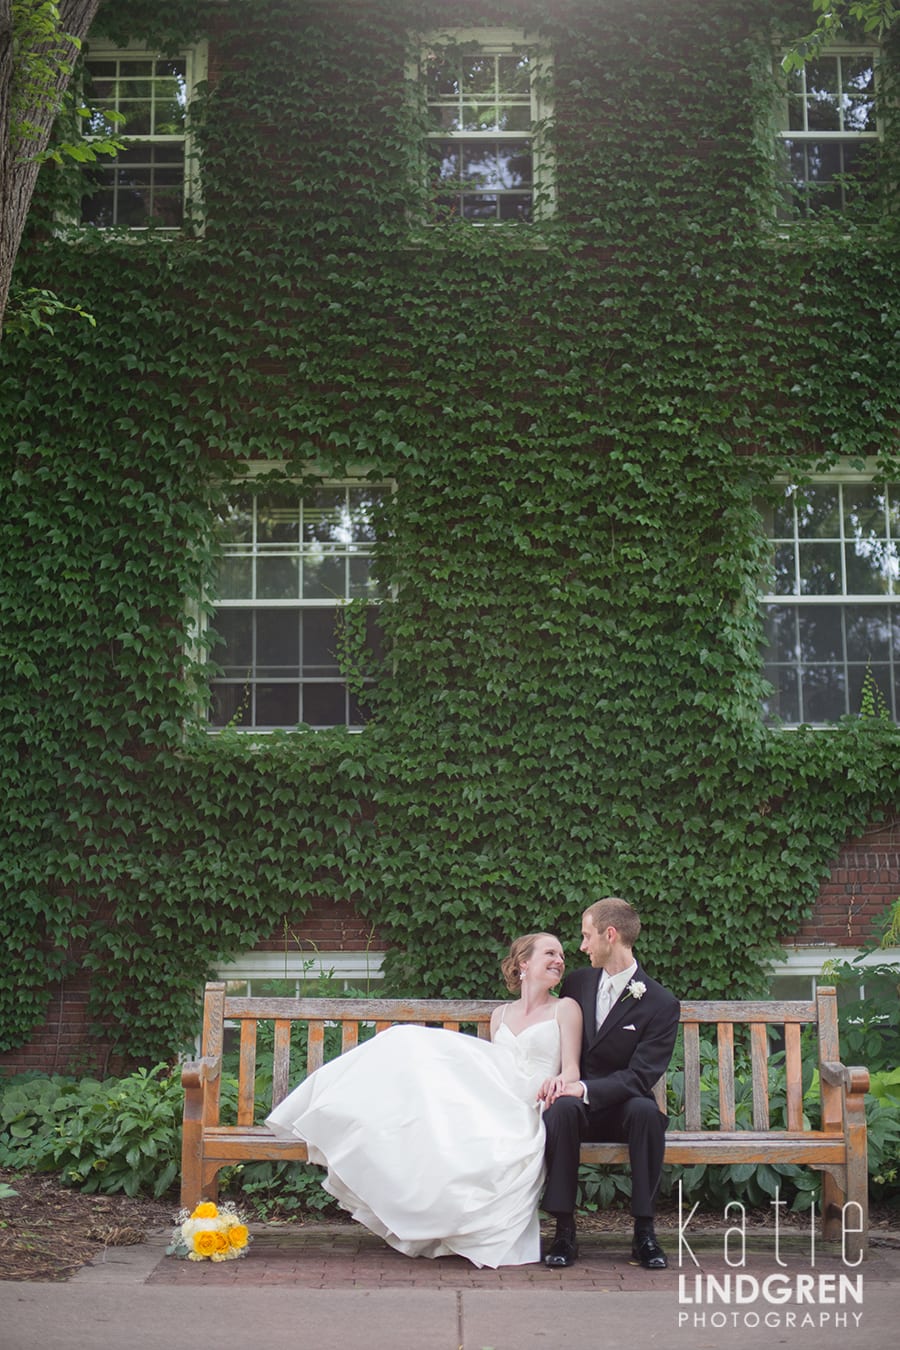 Cara & Jim | Hudson Wedding Photographer